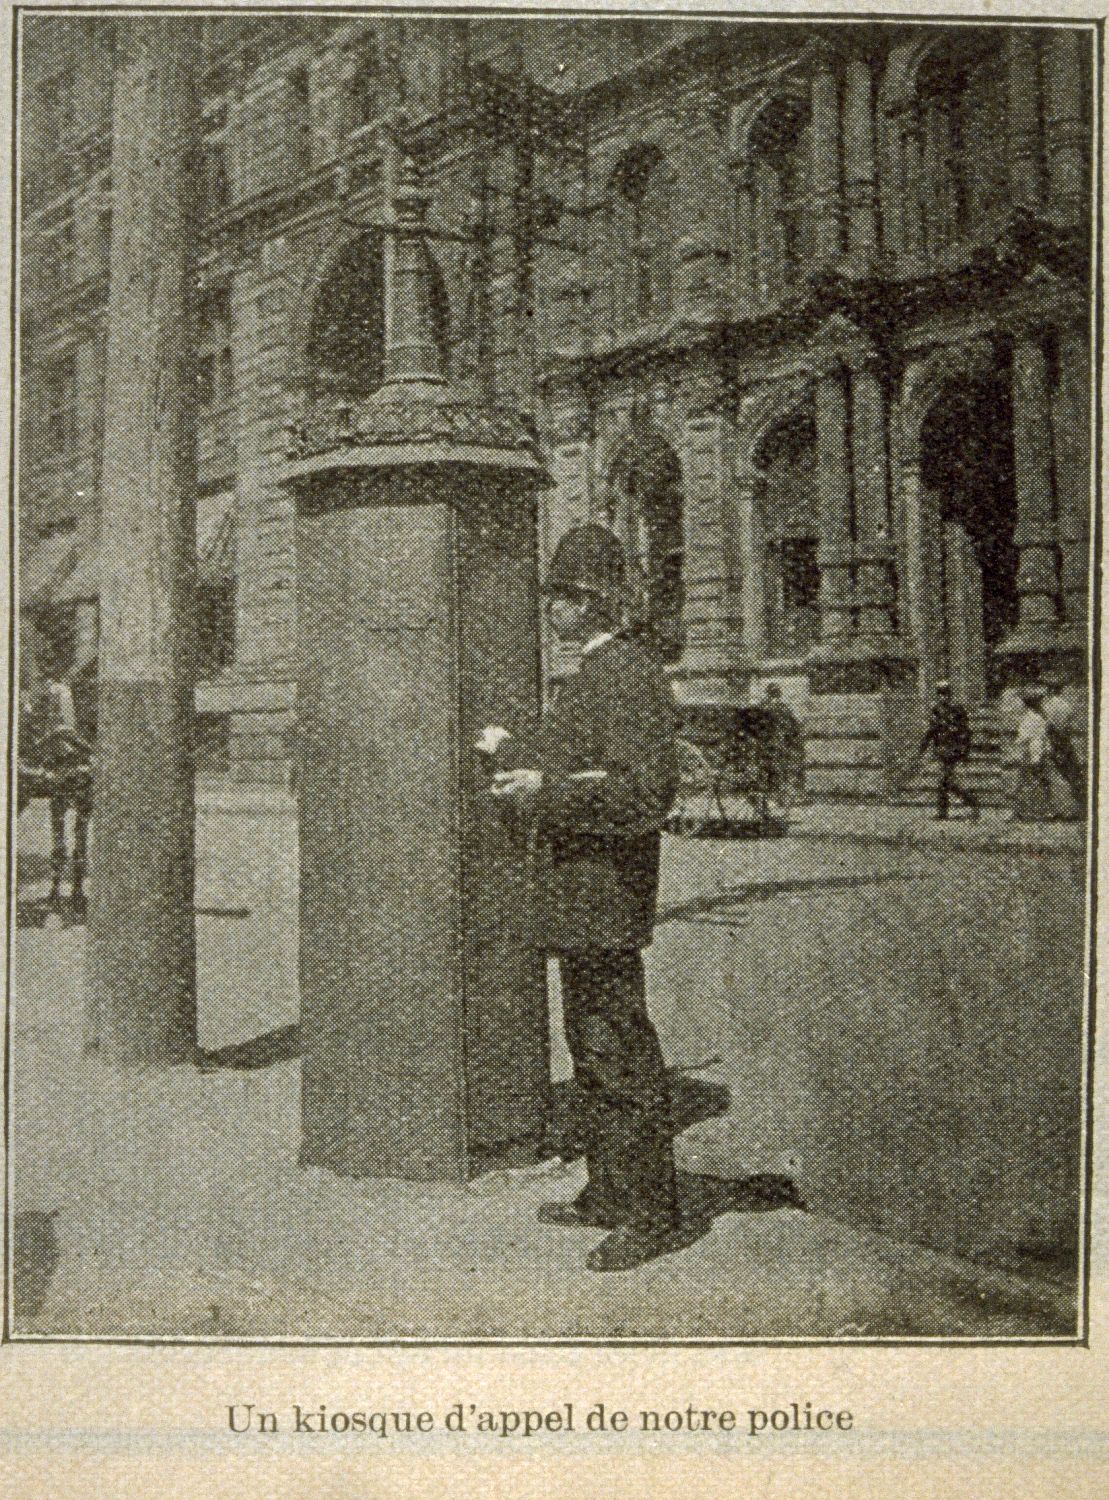 Photographie en noir et blanc tirée d’une coupure de journal. On y voit un policier en uniforme près d’une boîte d’alarme.